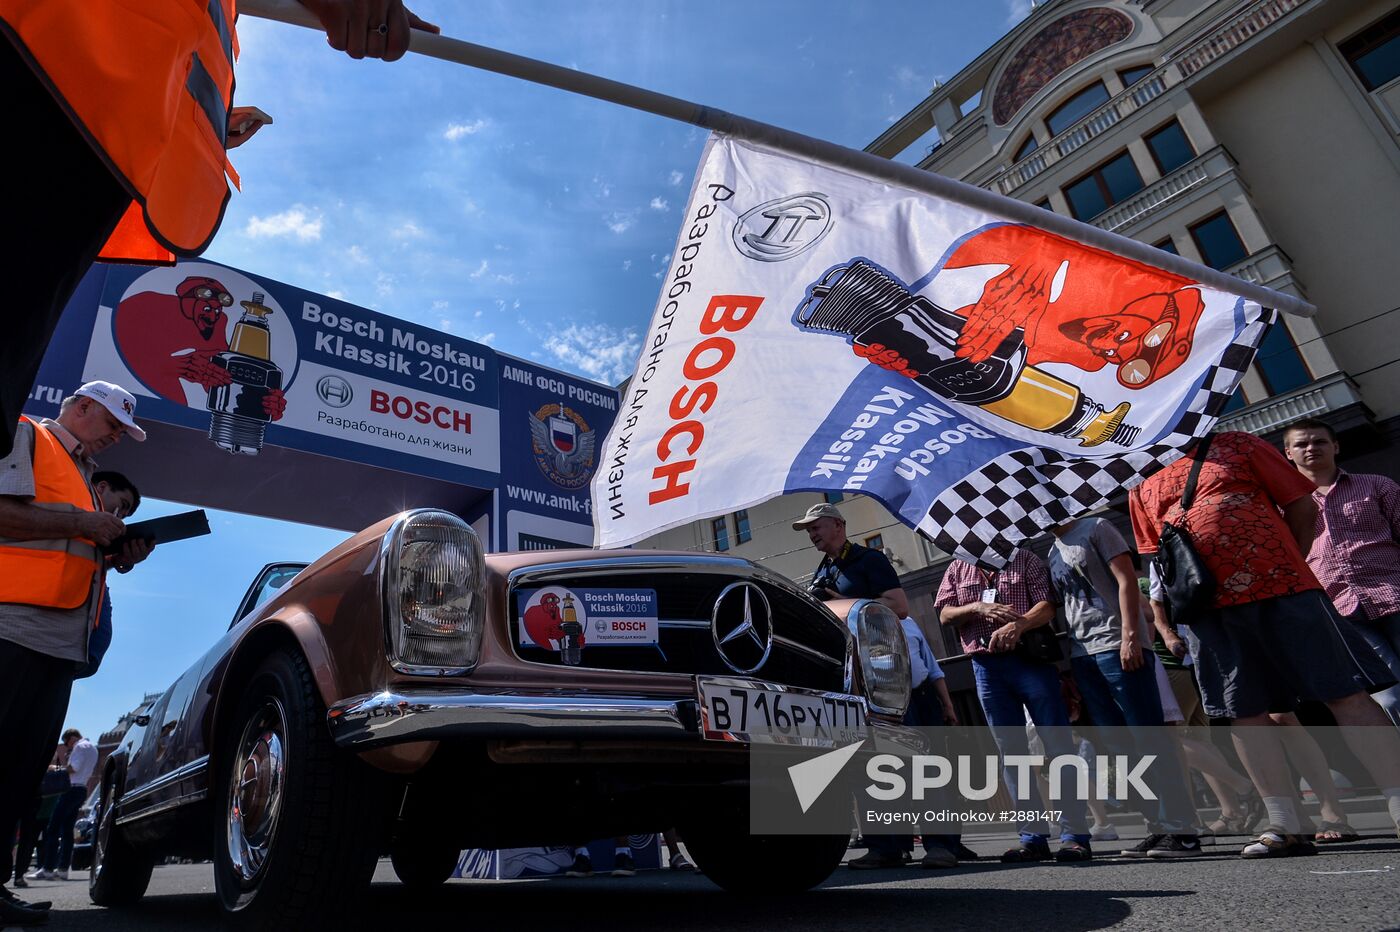 Bosch Moskau Klassik antique car race